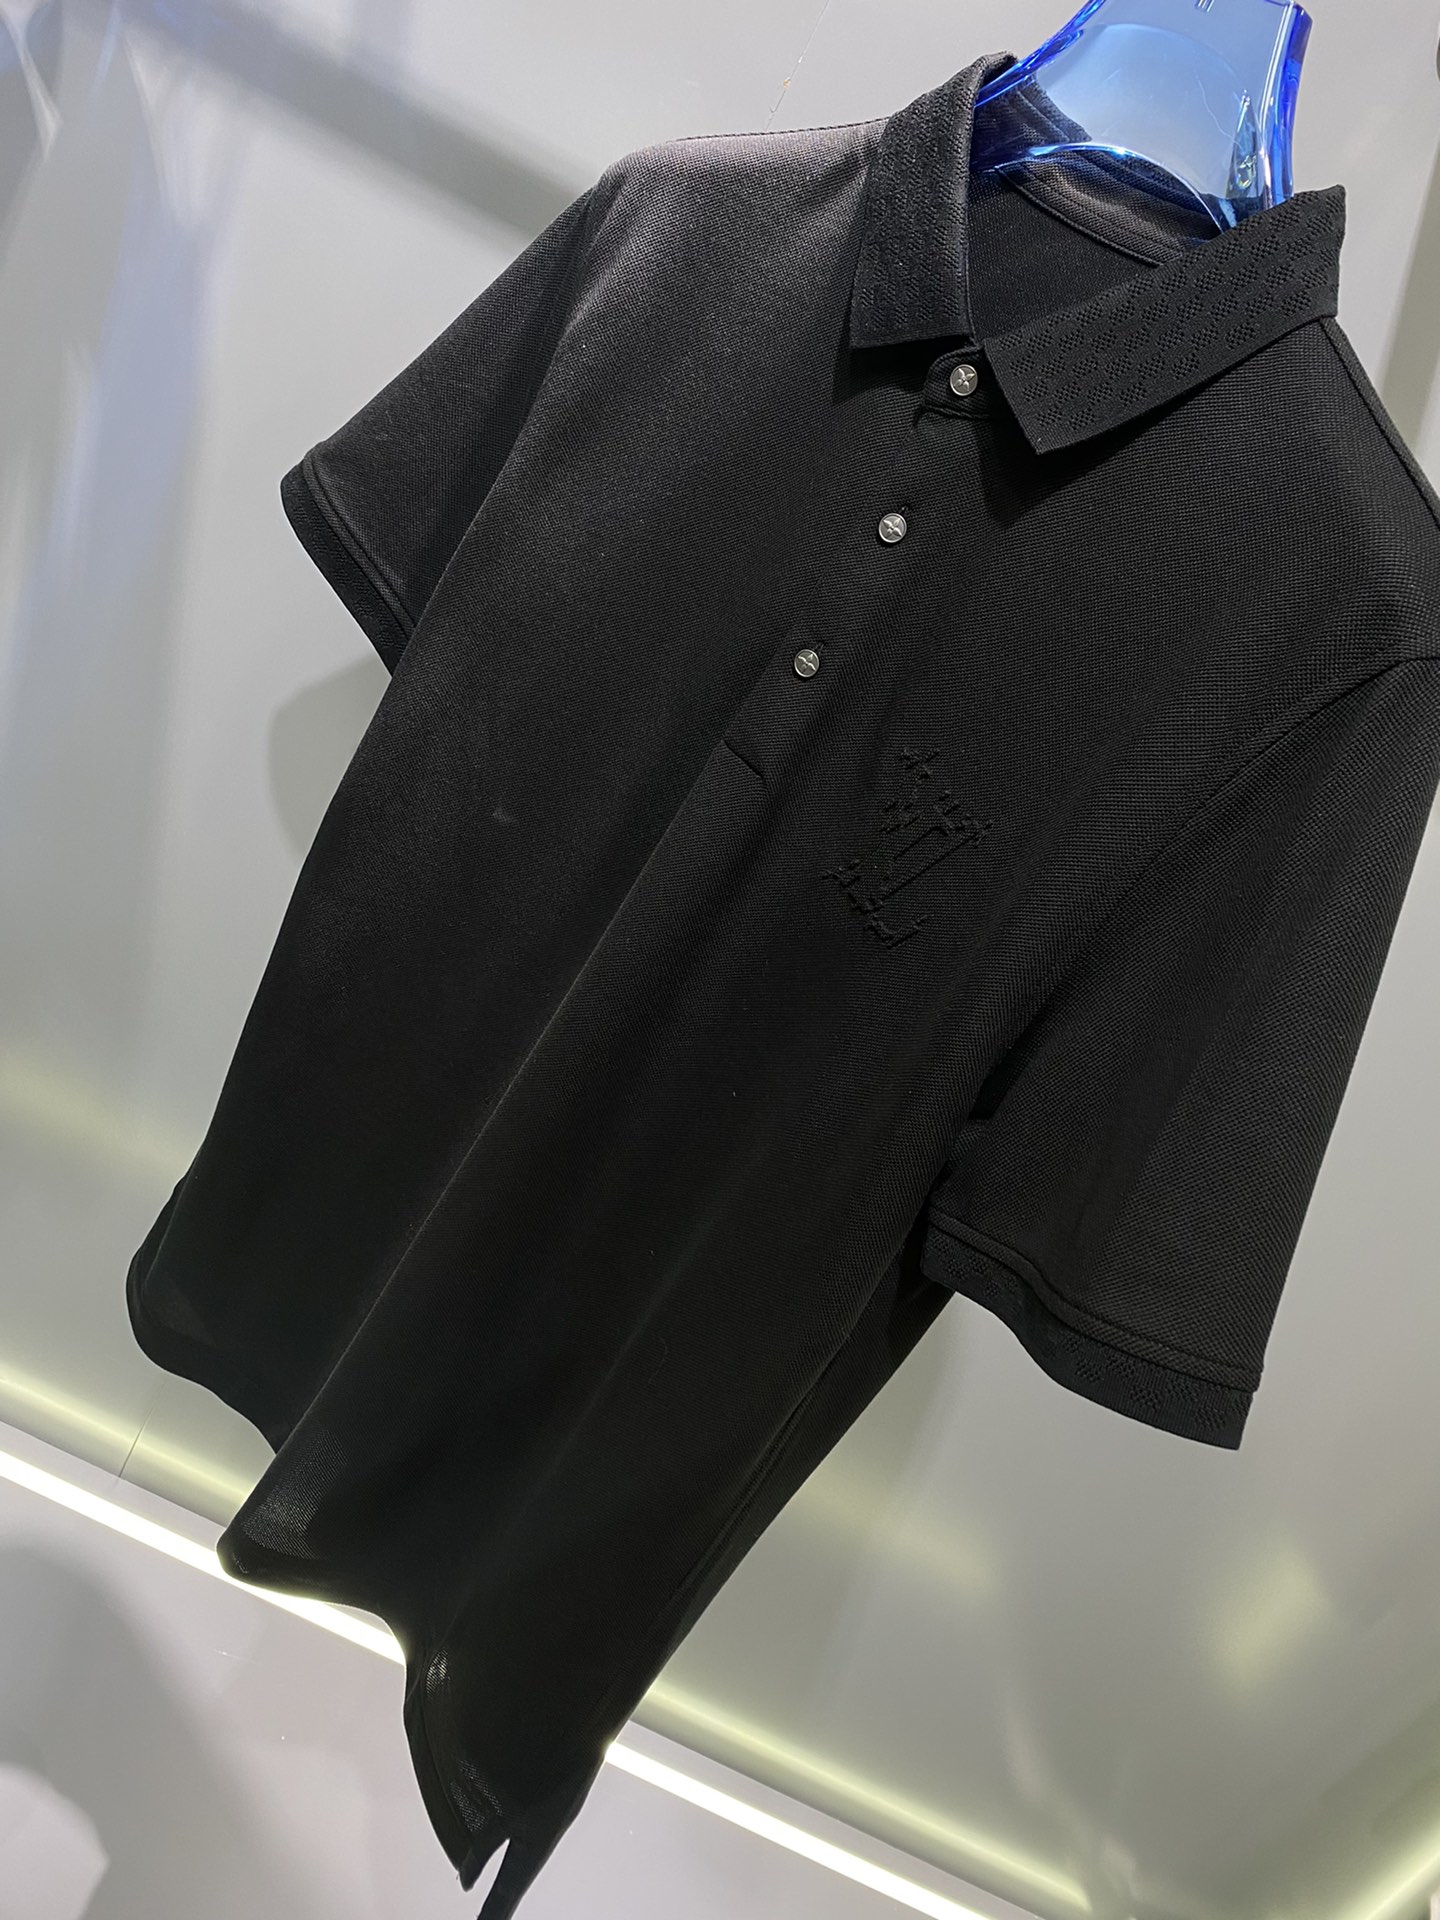 #1v夏季新款短袖T恤Polo客供定制珠地面料简单时尚款超级好看！简单大方的款式！满满的高级感四季可穿颜